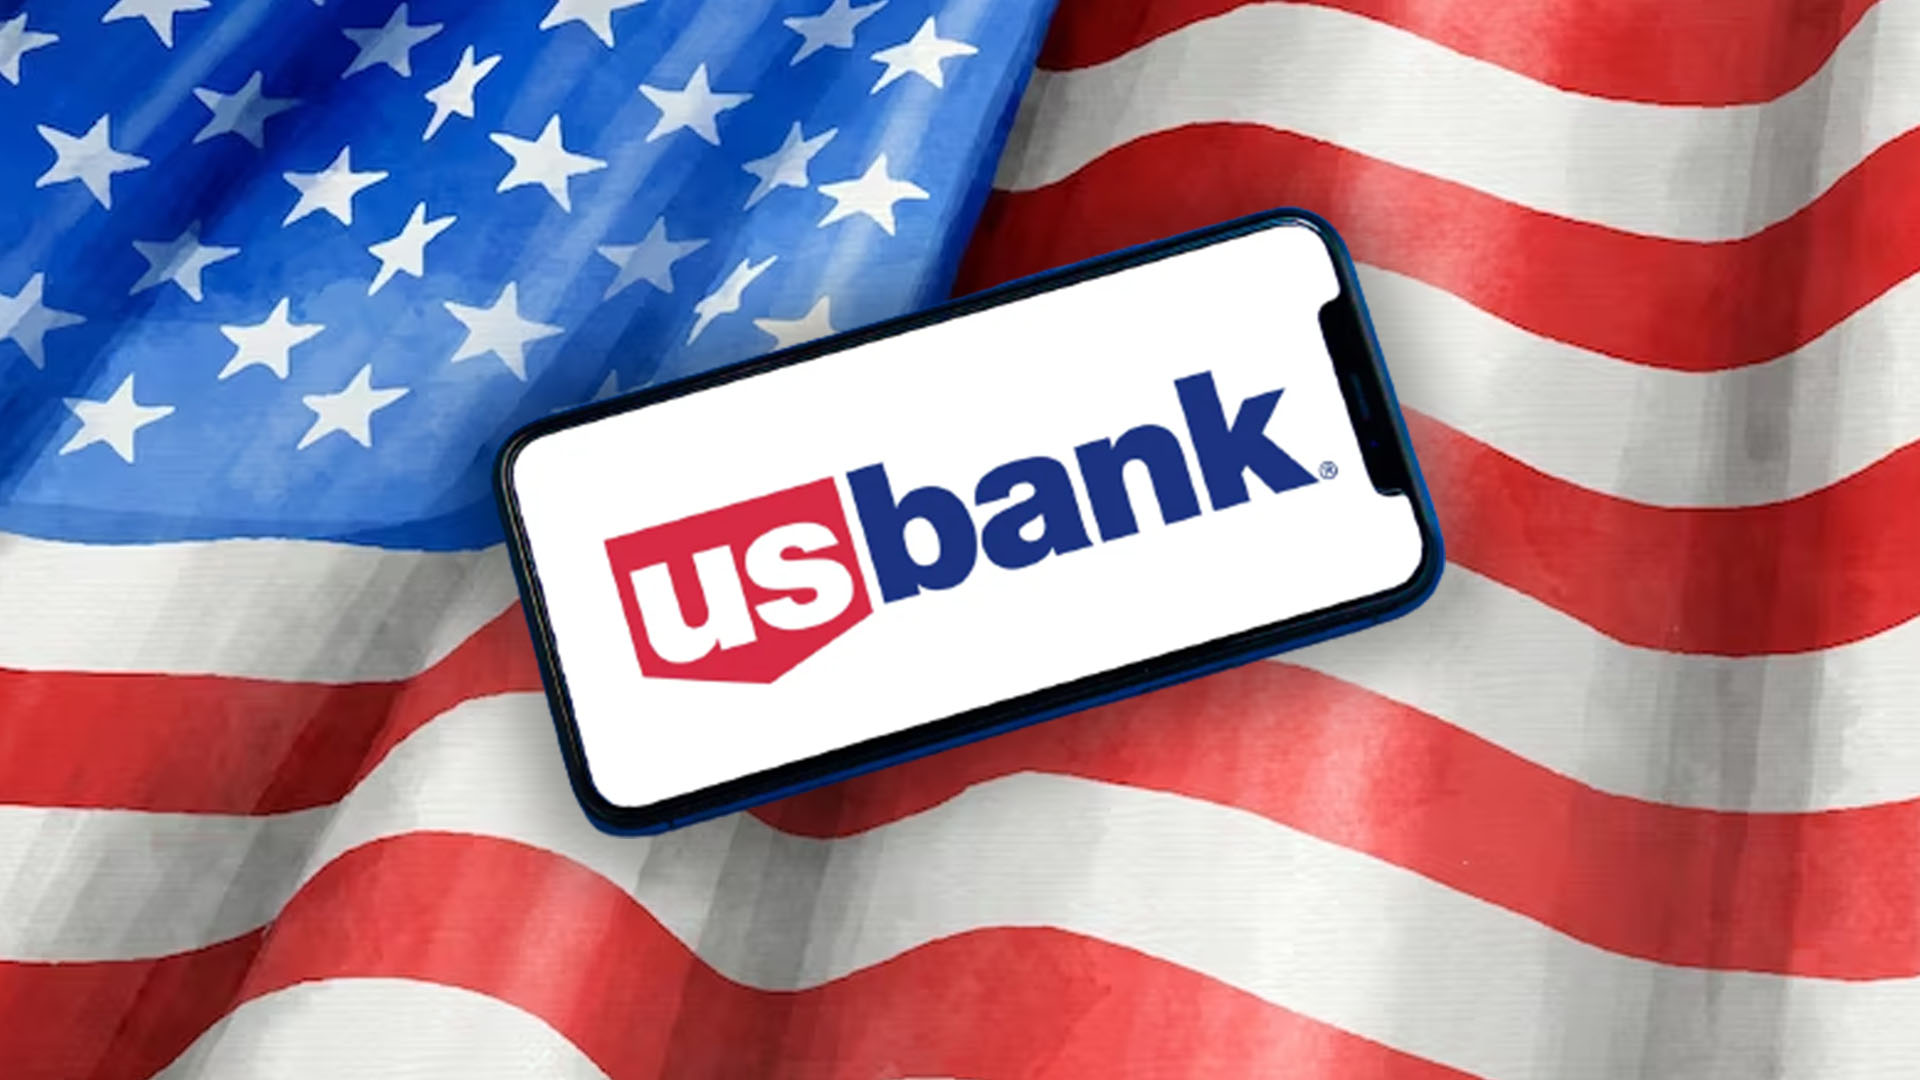 U.S. Banks